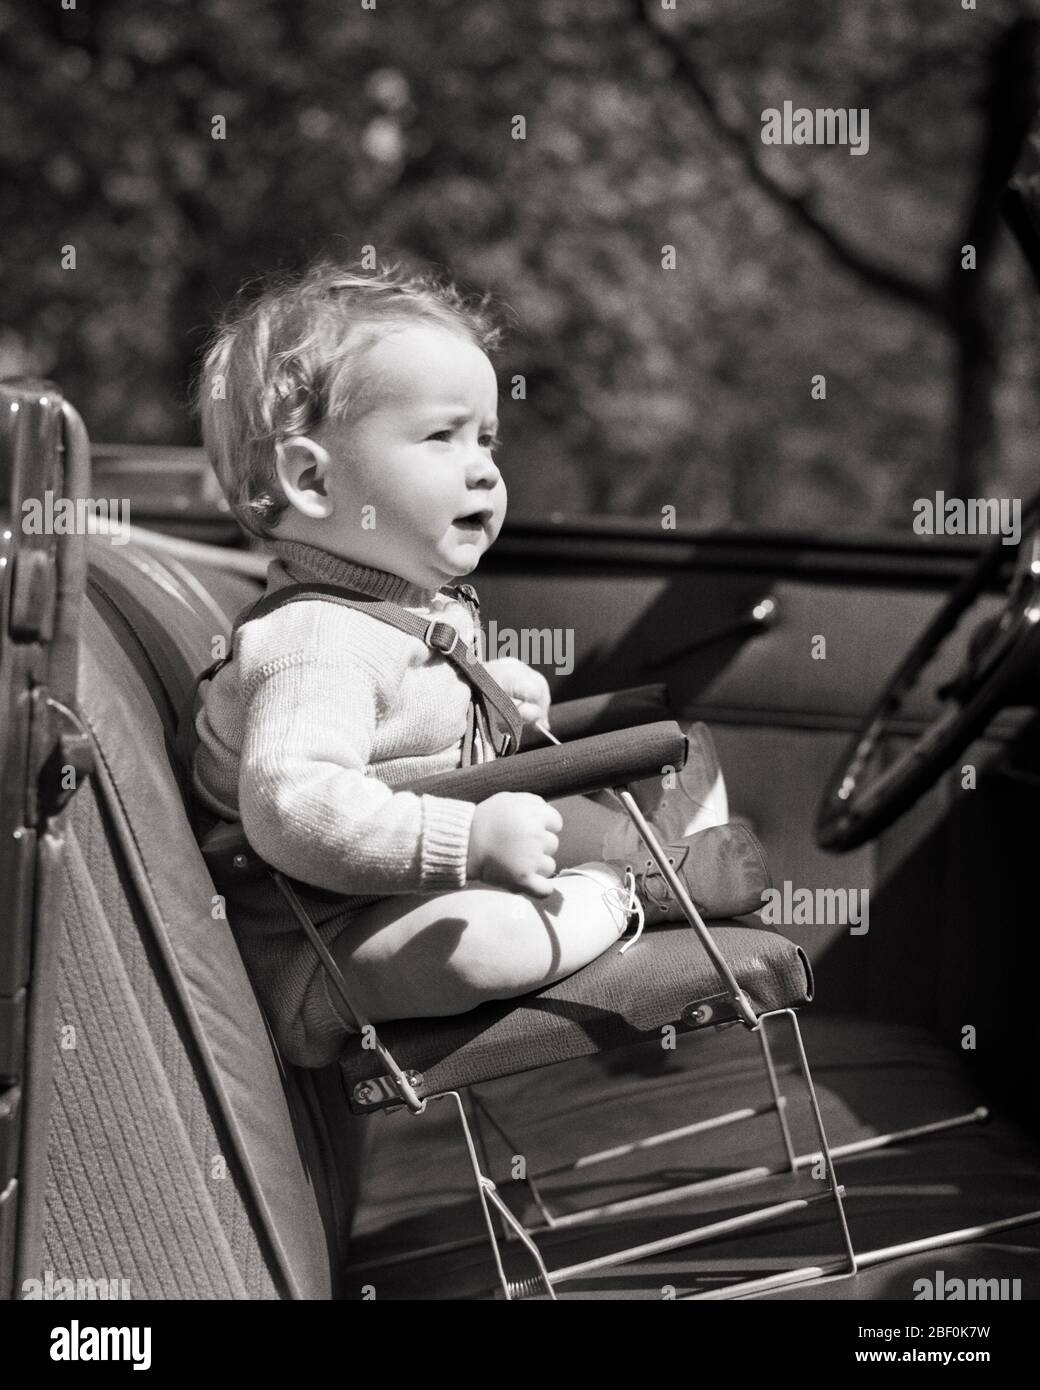 Old baby boy in car -Fotos und -Bildmaterial in hoher Auflösung – Alamy